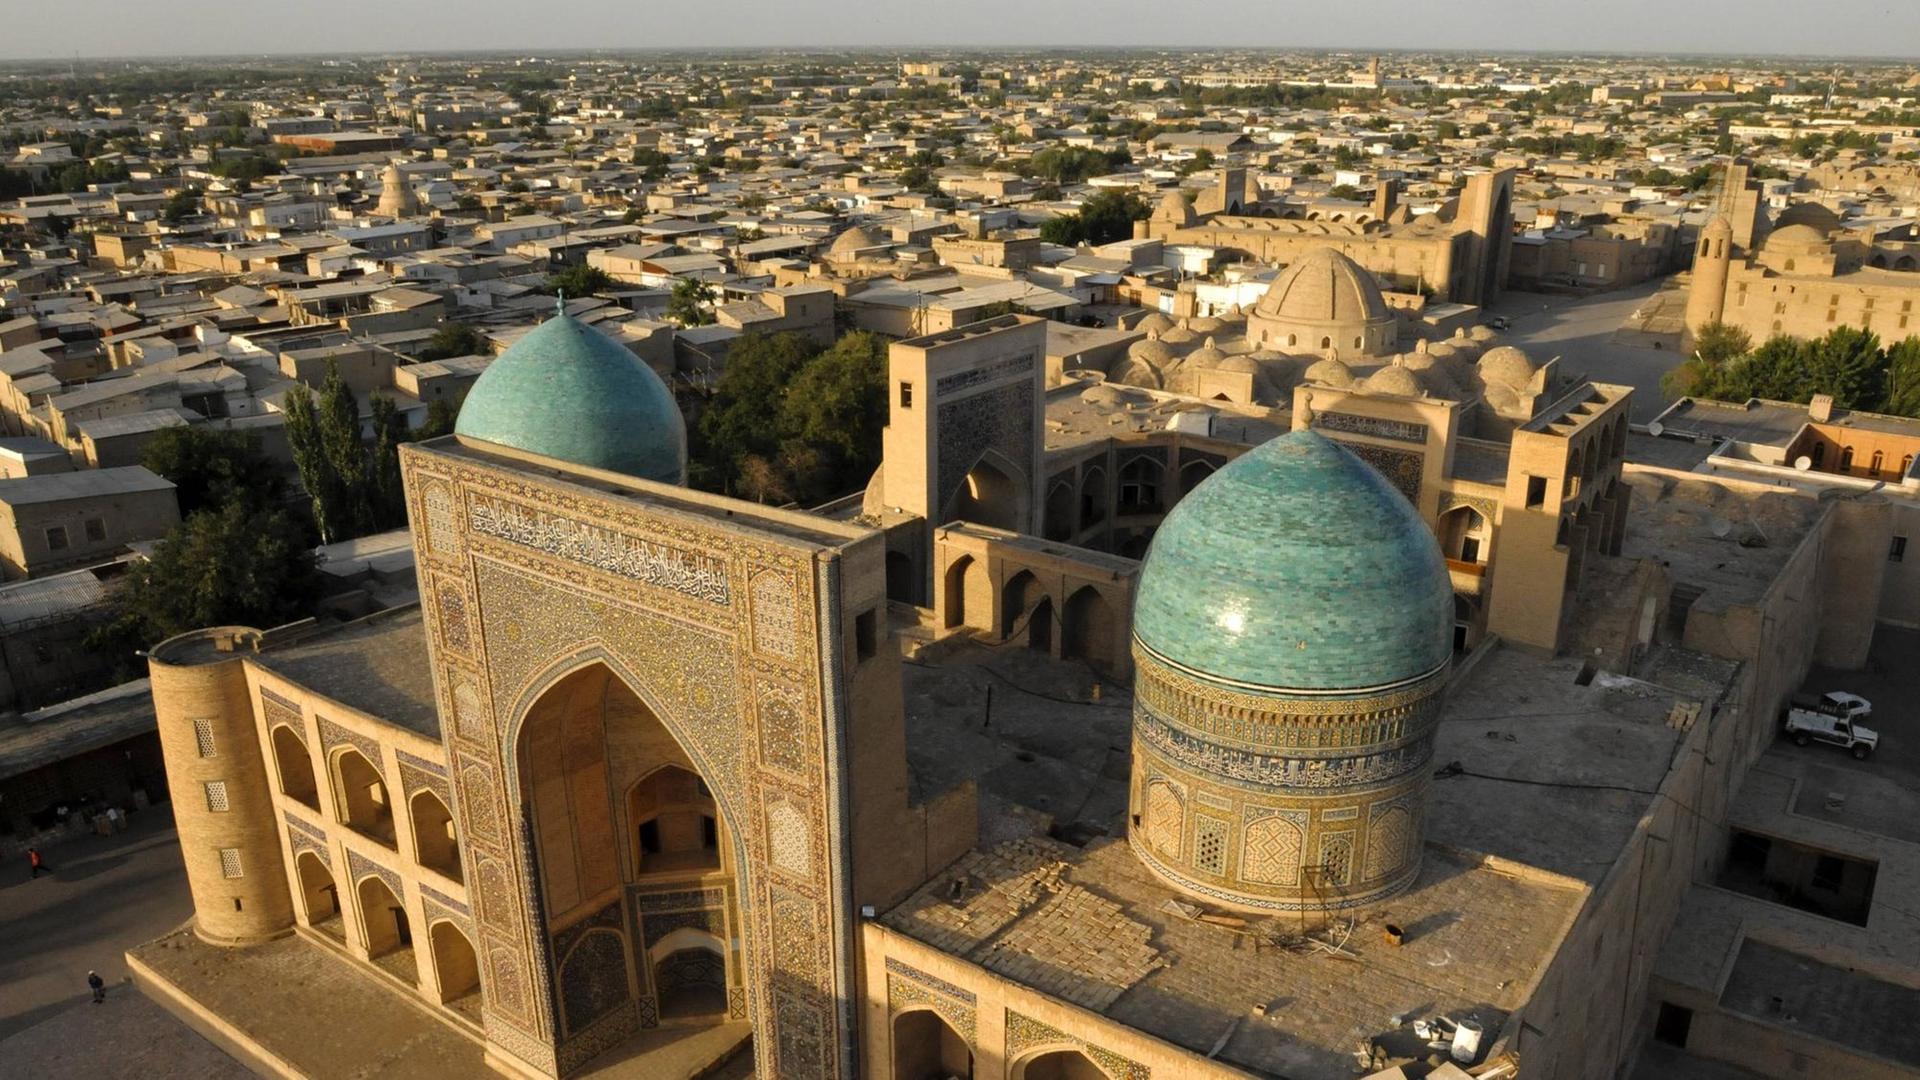 Blick auf die blauen Kuppeln und den großen Iwan der islamischen Lehrstätte Mir-i Arab Madrasa in Usbekistan.